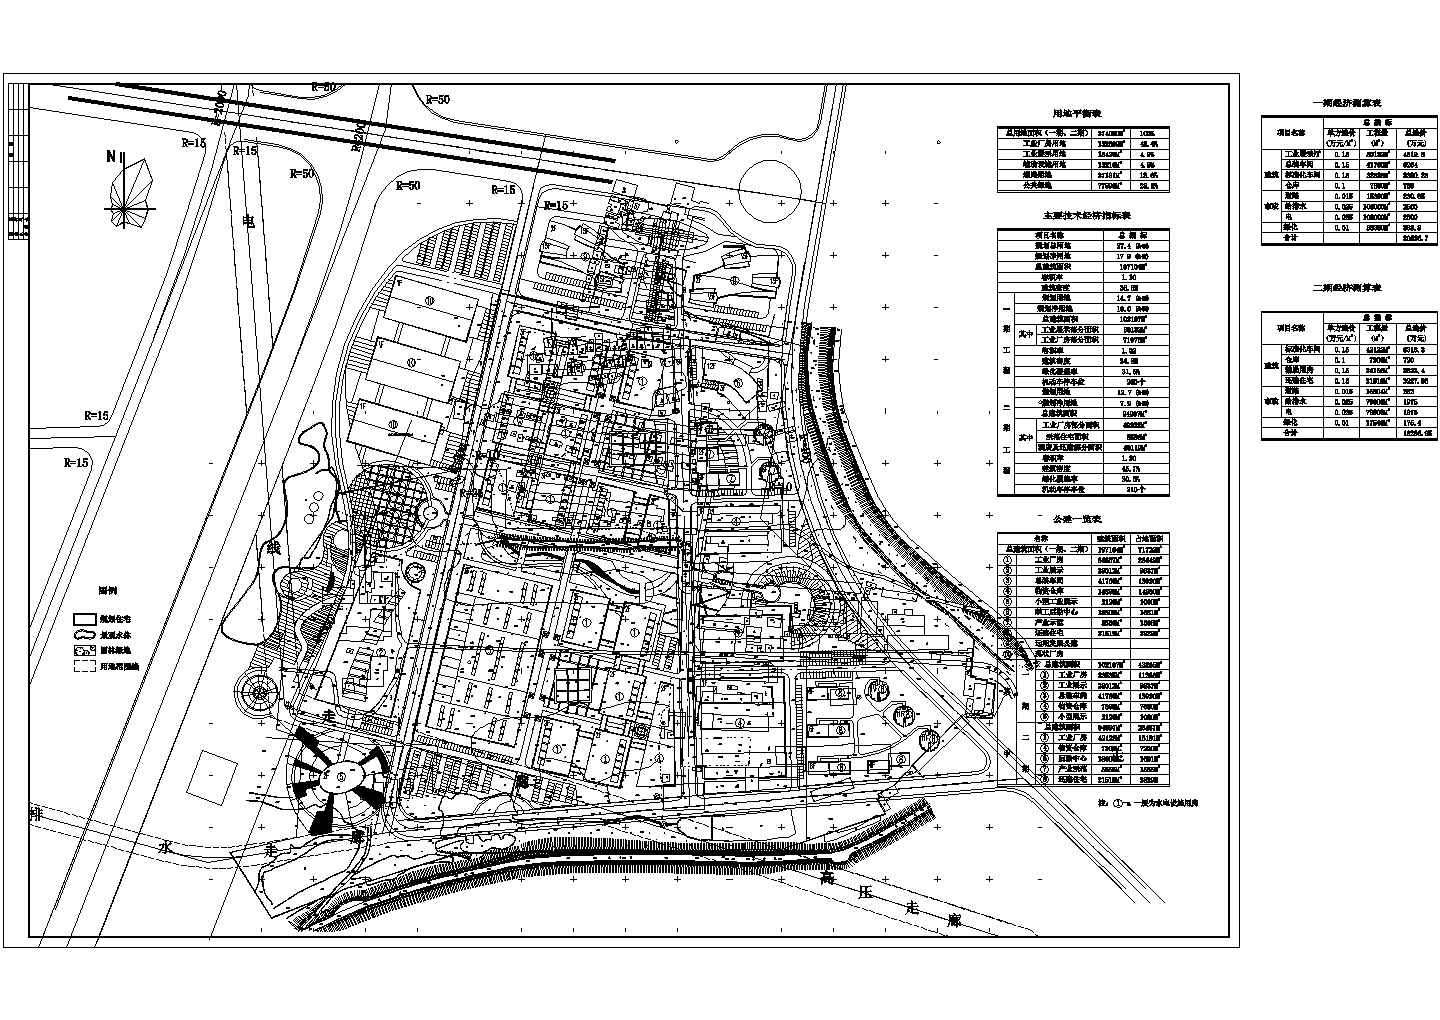 某新型工业园整体规划详细方案设计施工精品CAD图纸